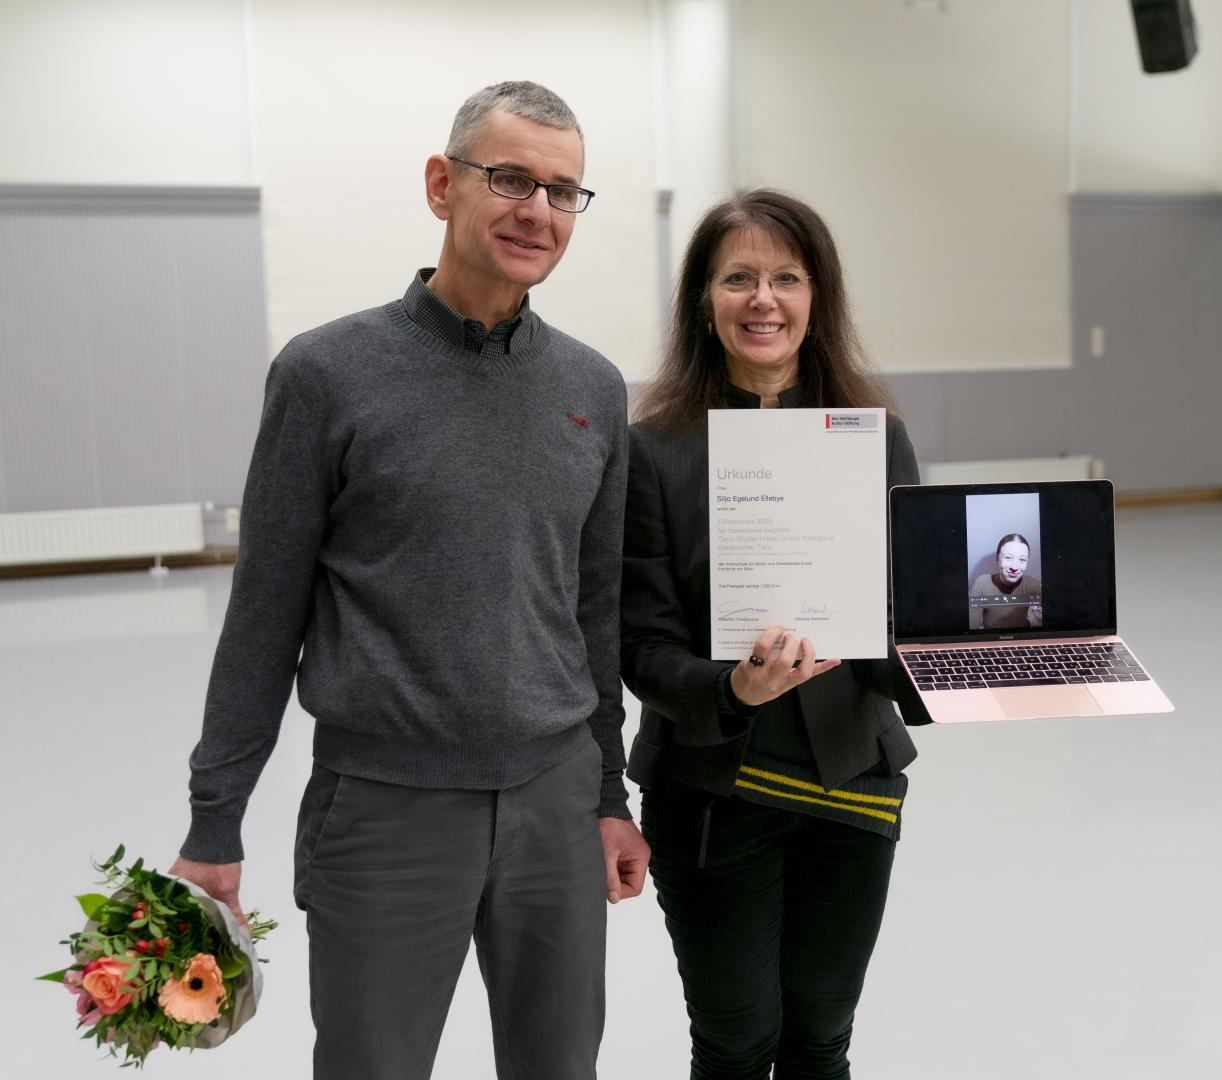 Silja Egelund Ellebye ist per Laptop zugeschaltet, um ihren Förderpreis entgegenzunehmen. Ein Mann und eine Frau halten Blumenstrauß, Urkunde und Laptop.